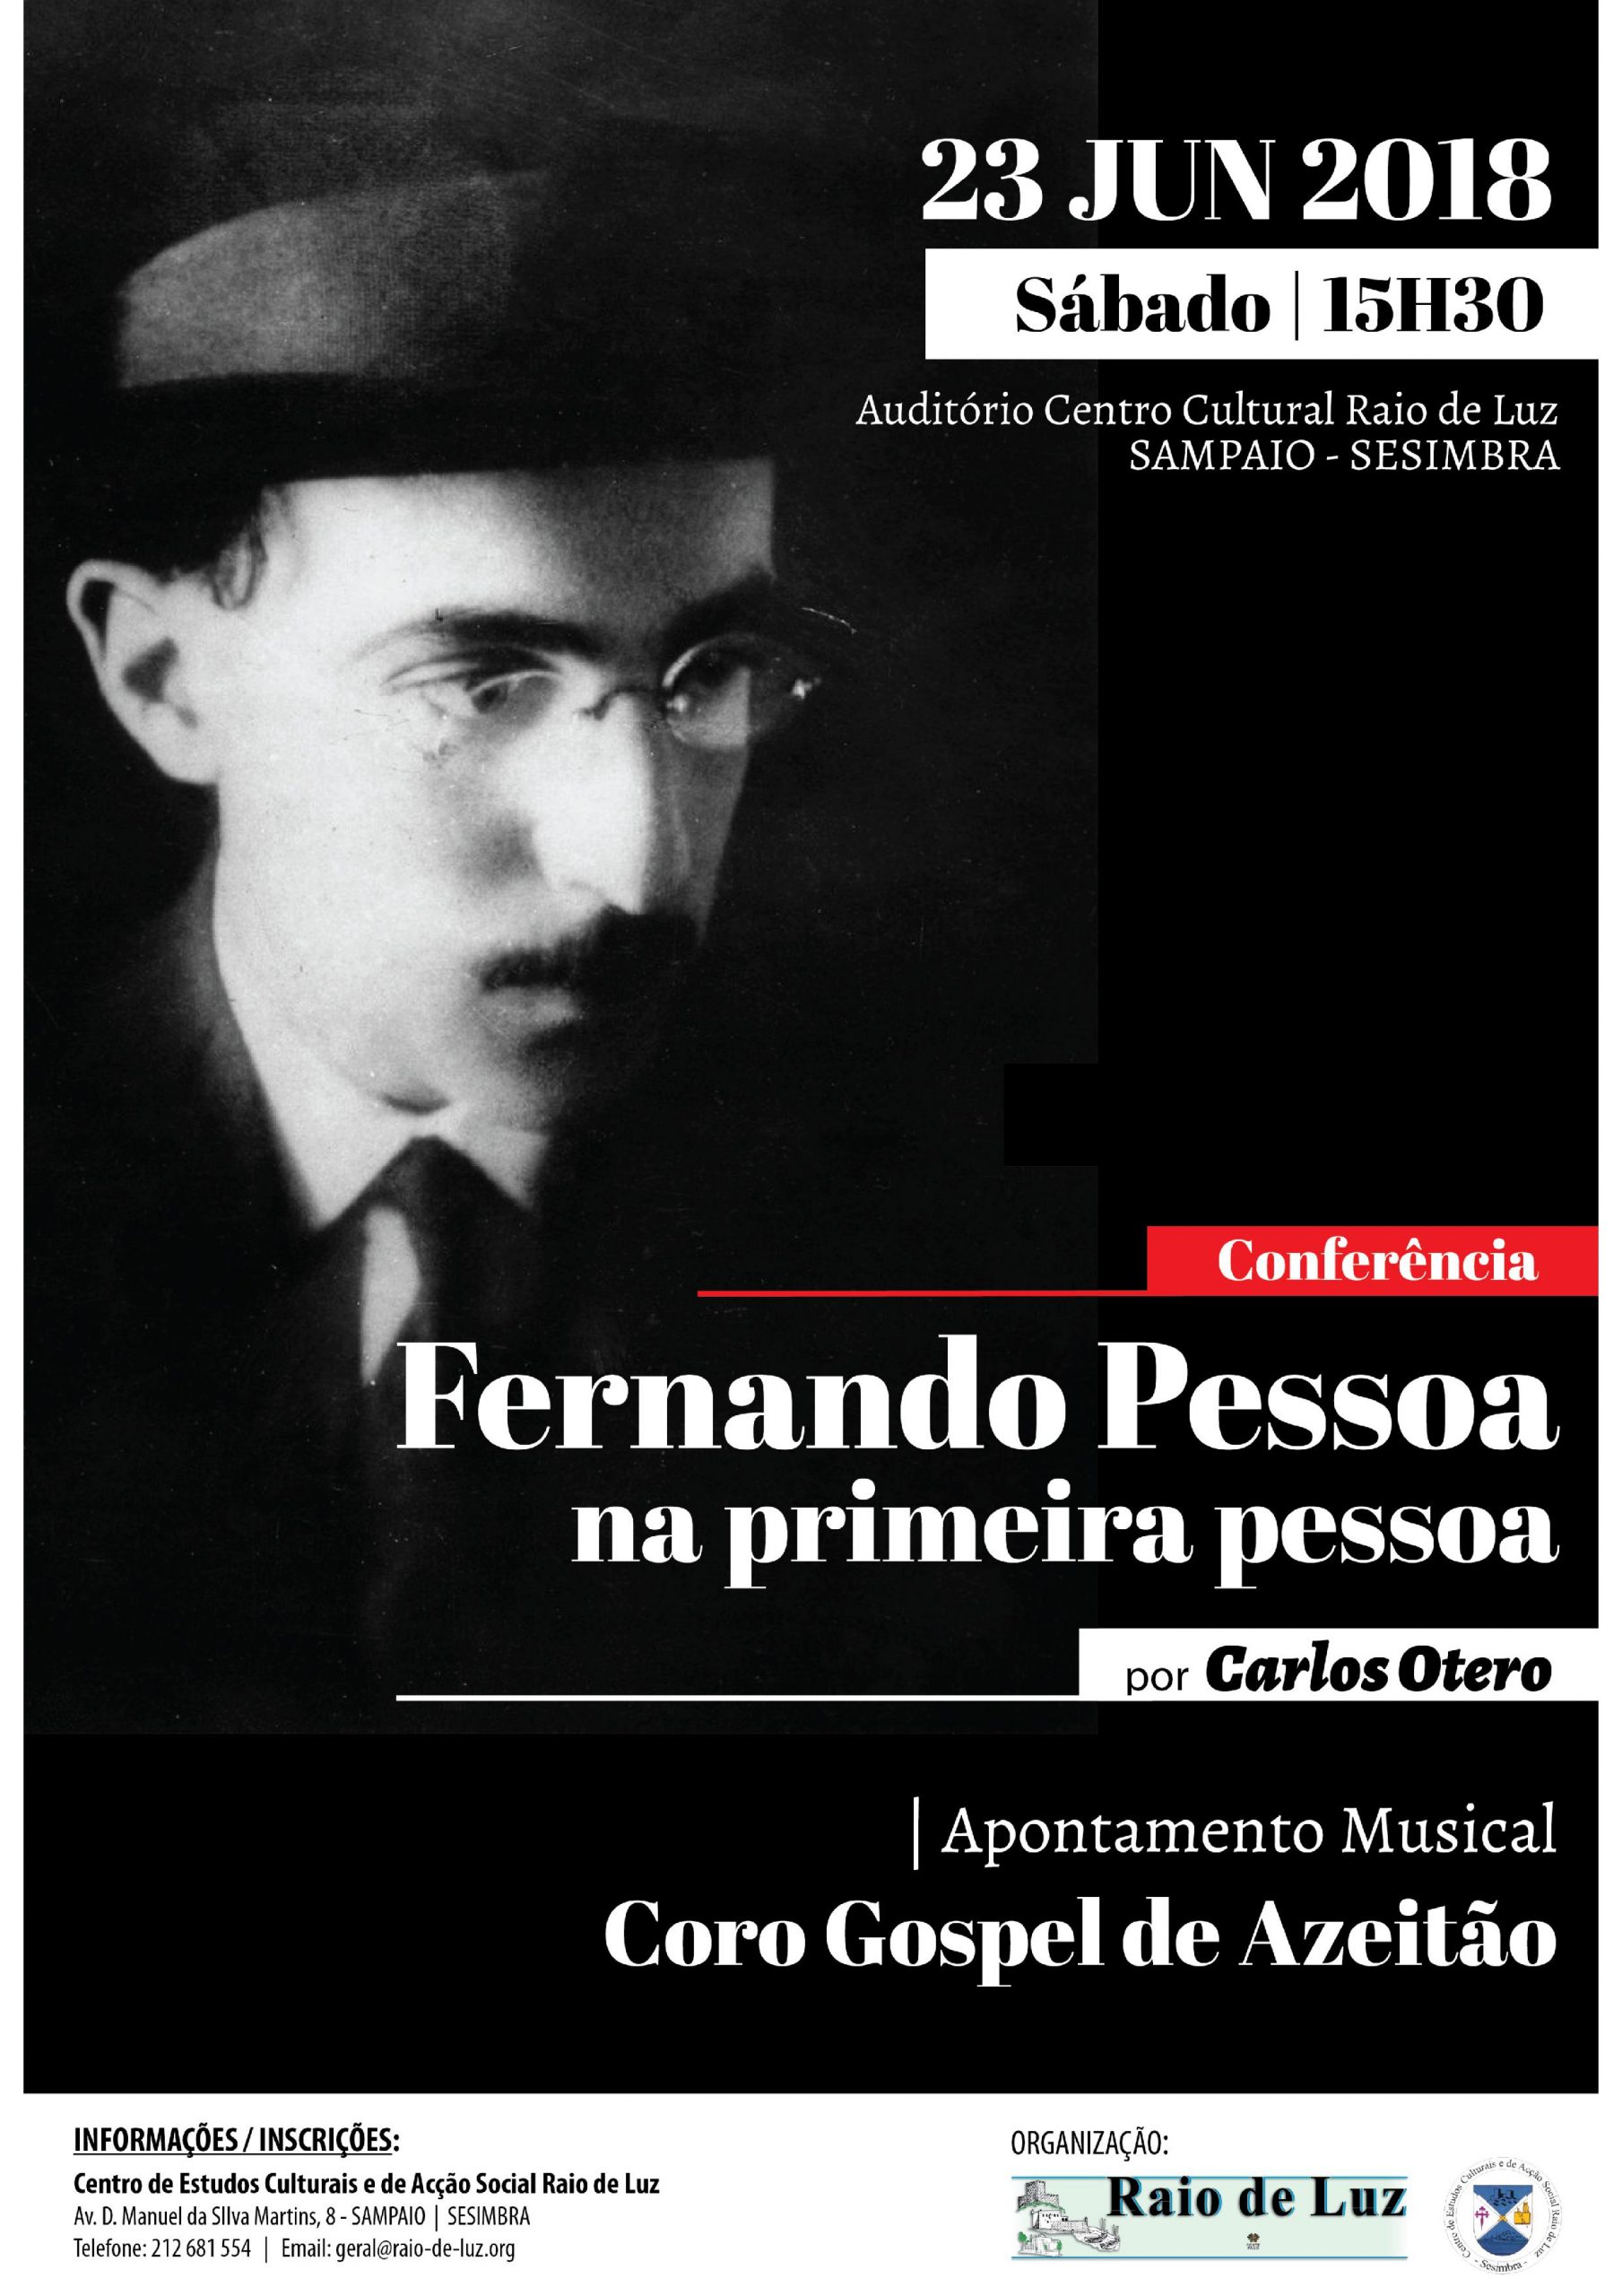 Fernando Pessoa, Maçonaria.jpg